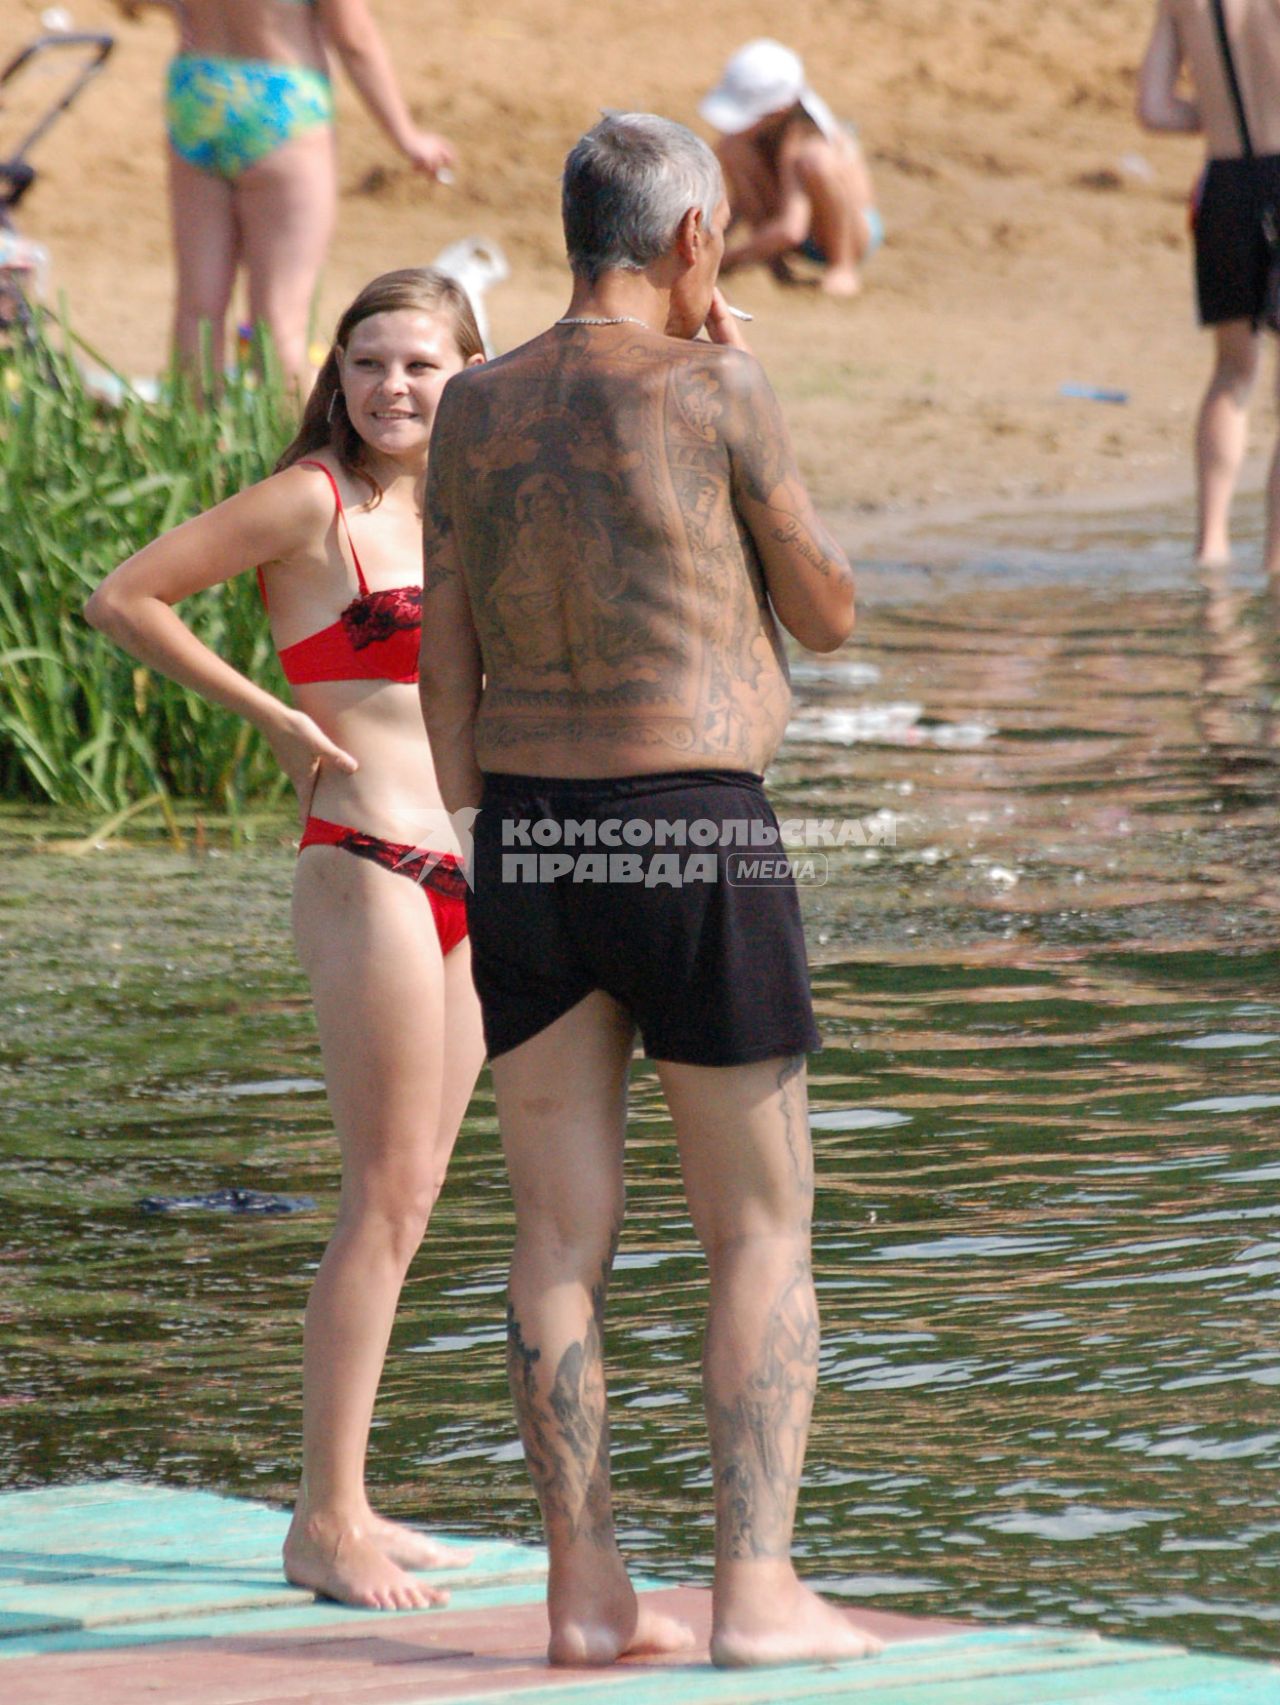 На берегу водоема стоит мужчина весь в наколках (татуировках), рядом с ним стоит девочка.